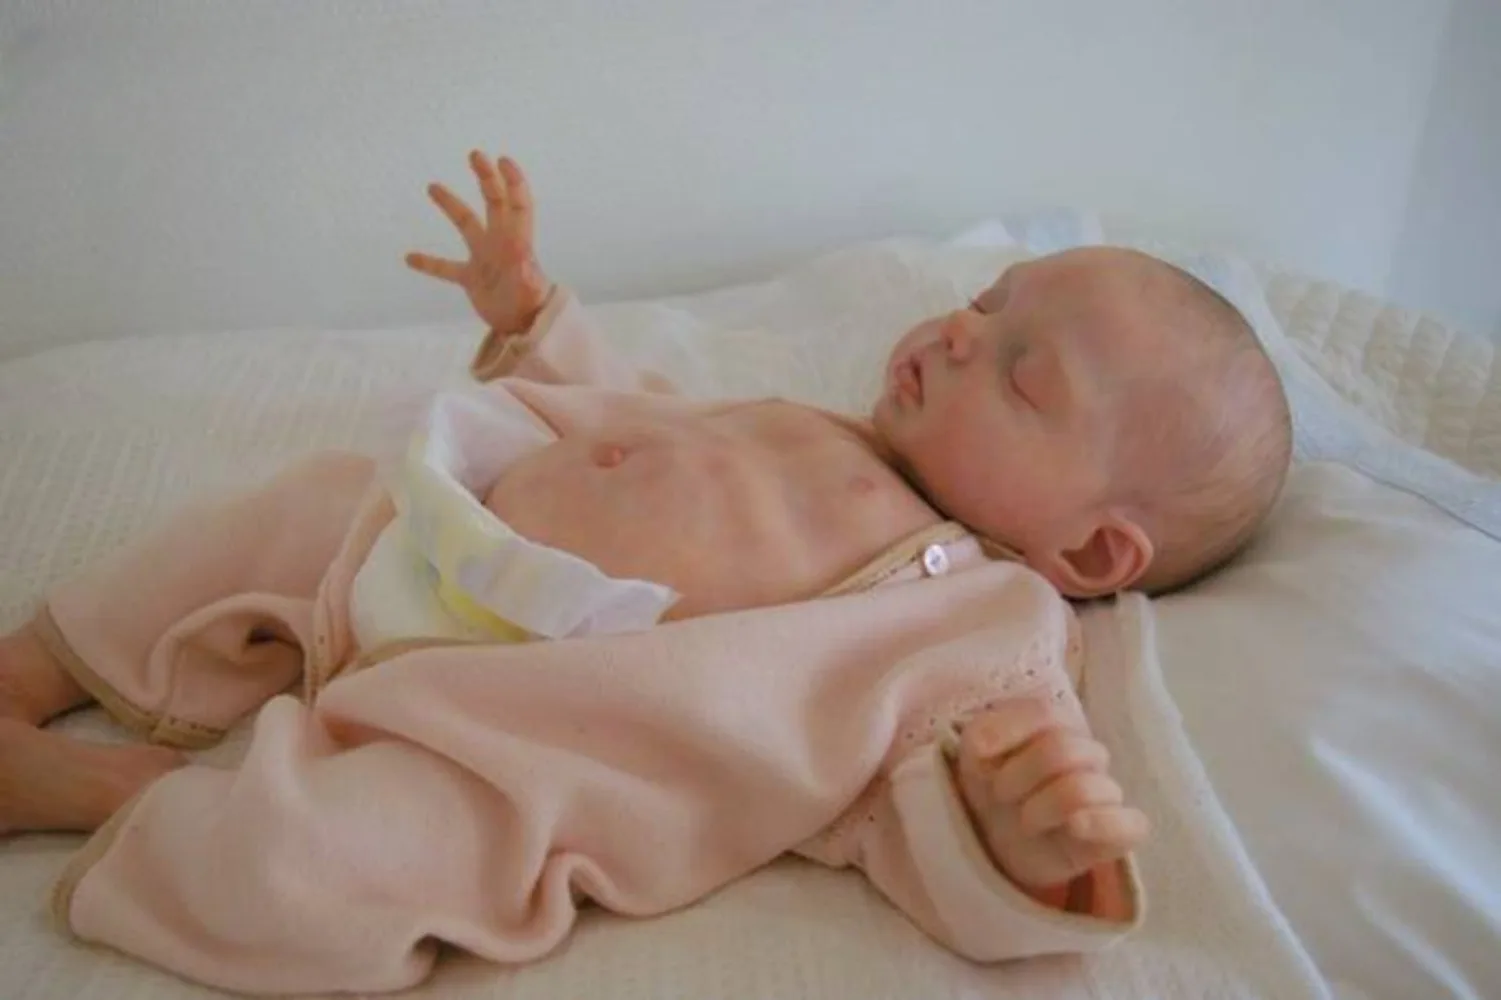 20 дюймов Комплект Куклы-Реборн Alexa Sleeping Baby В Натуральную Величину Незавершенные Части Куклы с Телом Muñecas Bebe Kit Reborn Para Niñas 0